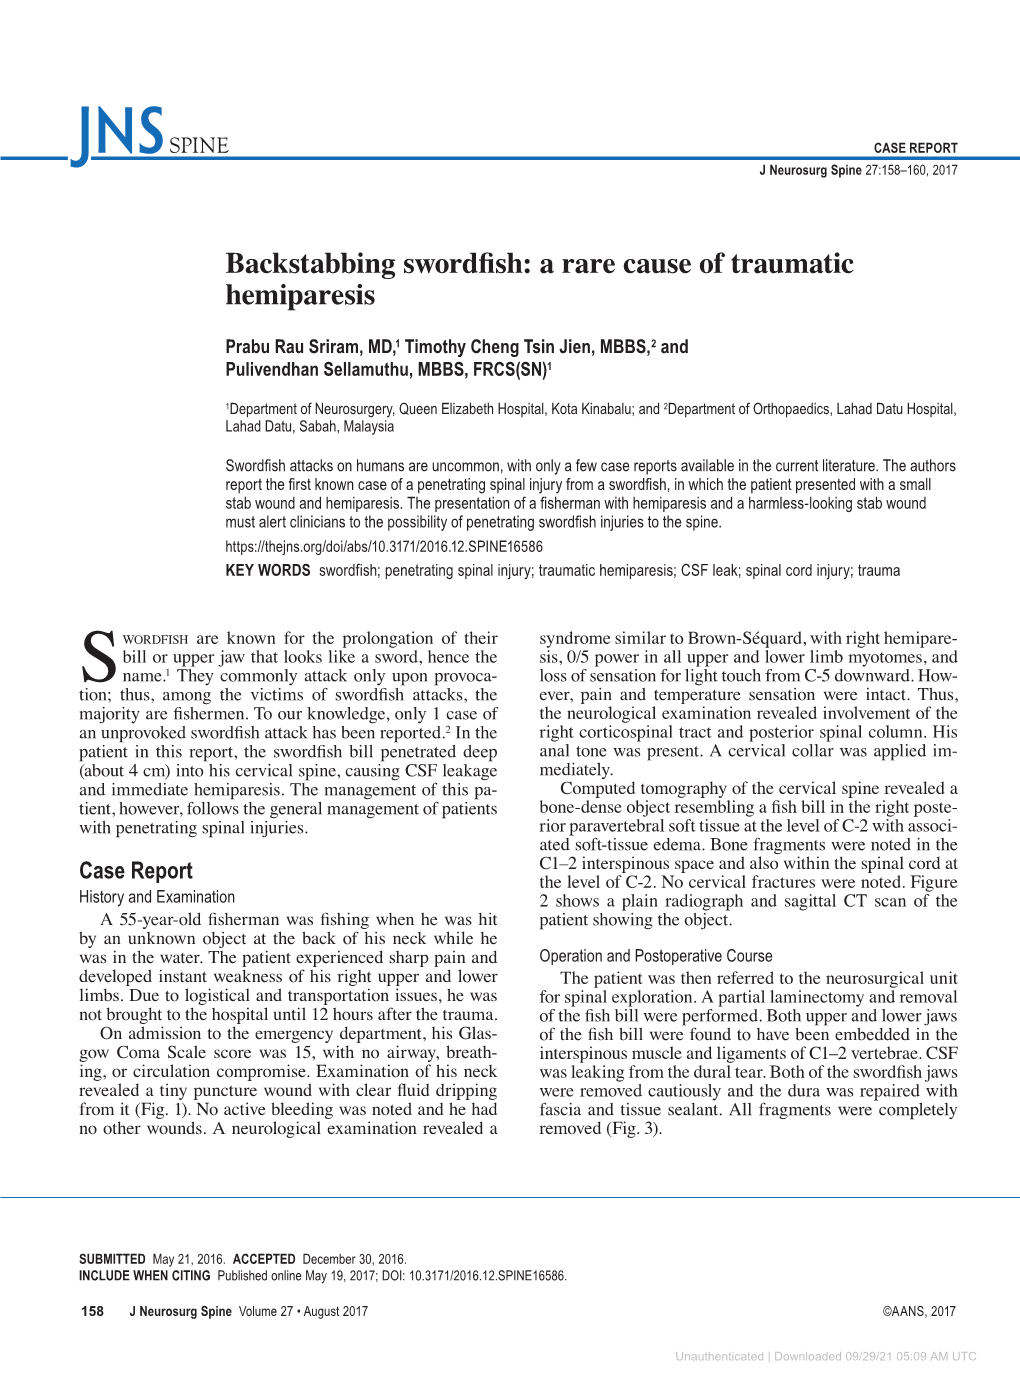 Backstabbing Swordfish: a Rare Cause of Traumatic Hemiparesis